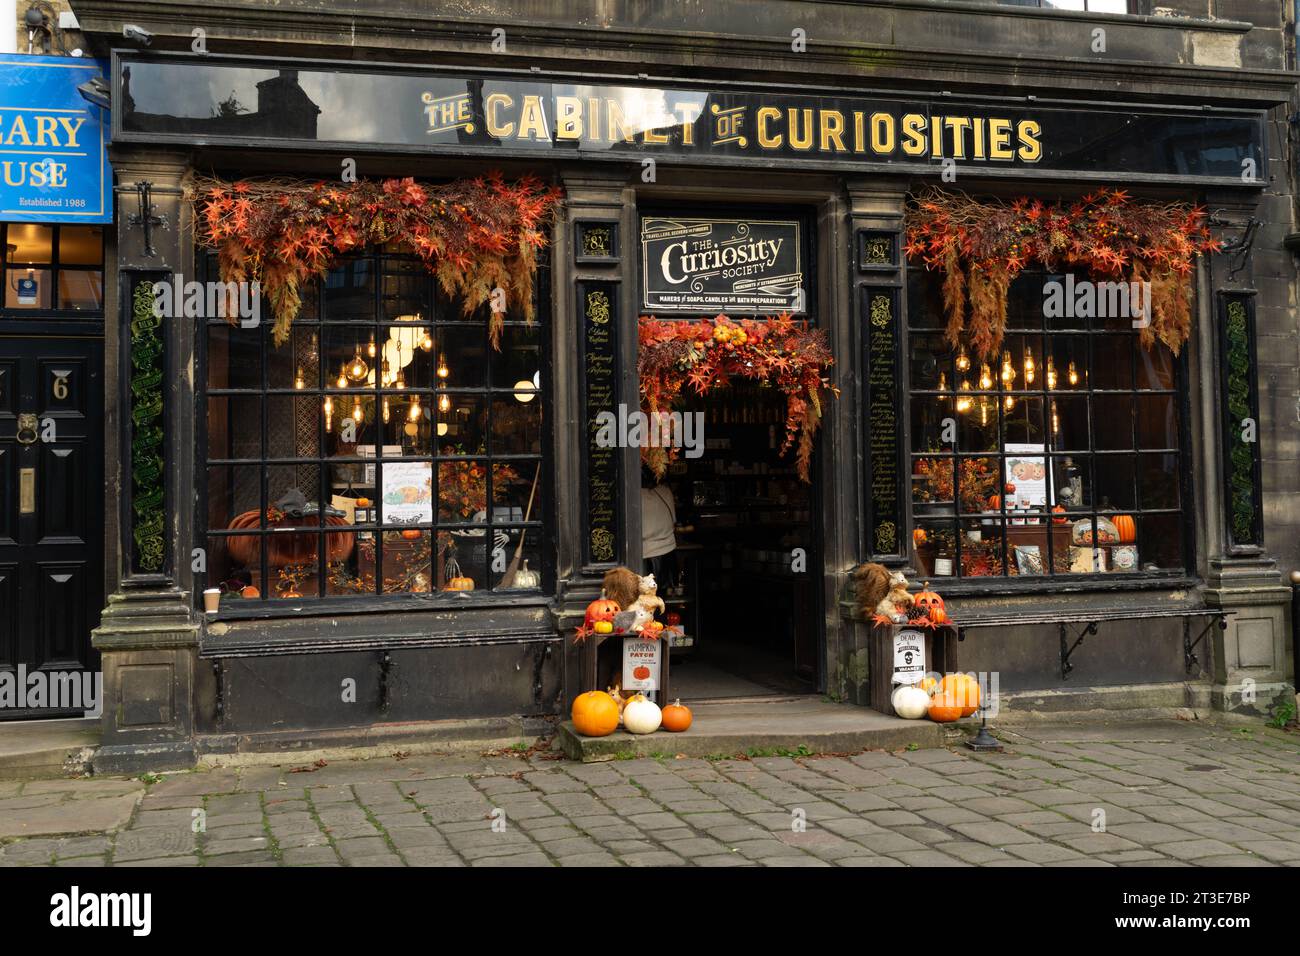 Boutique de cadeaux Cabinet of Curiosities avec décoration Halloween. Haworth, West Yorkshire, Royaume-Uni. Banque D'Images